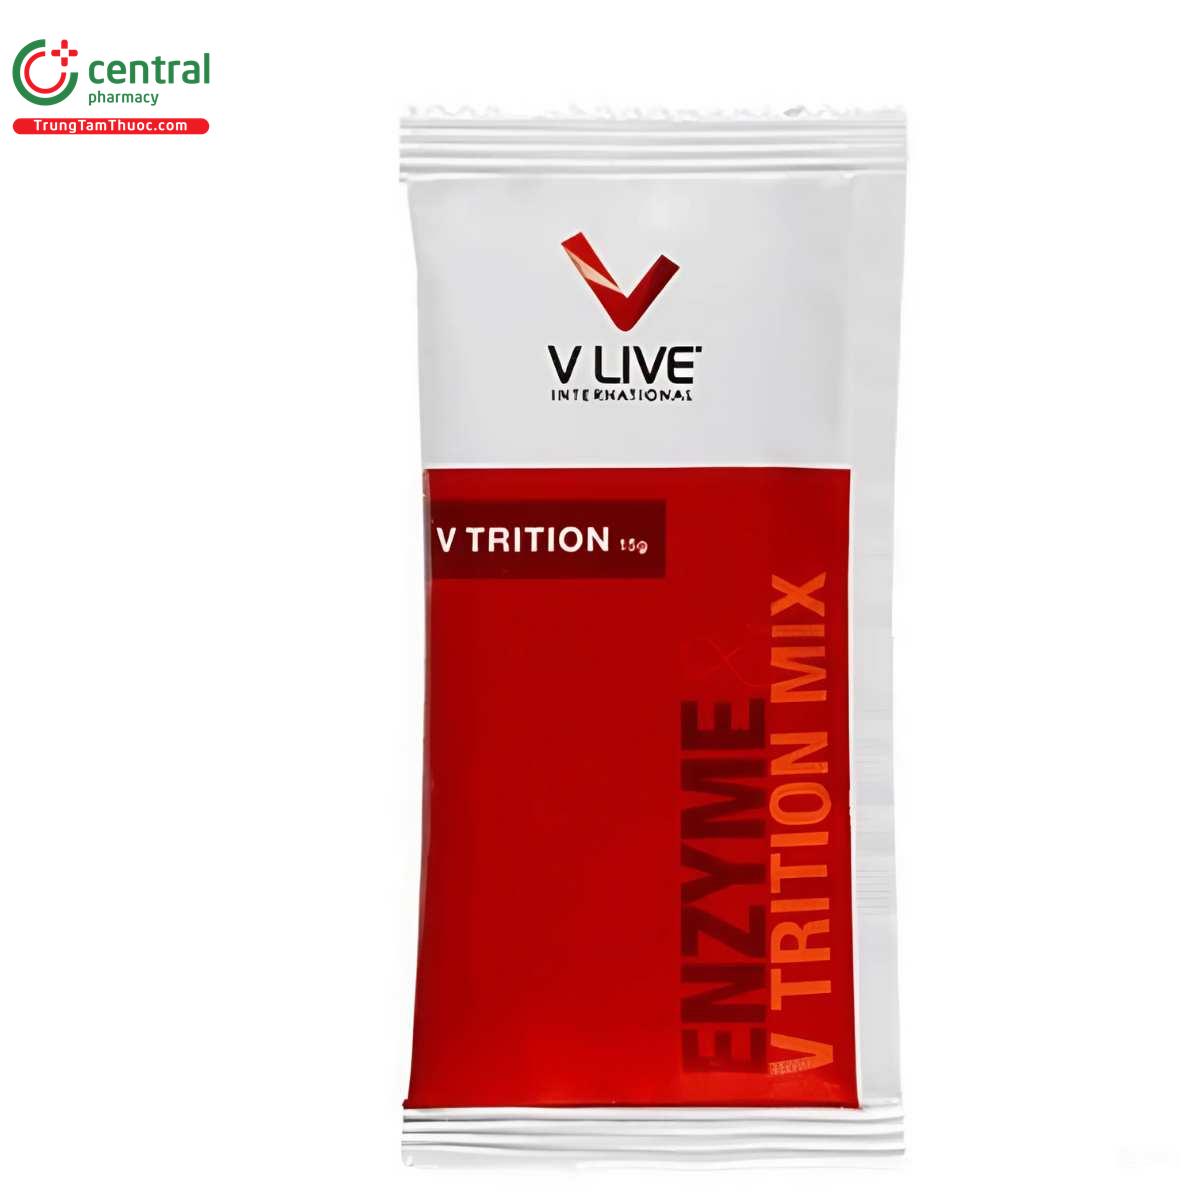 vtrition 12 L4844